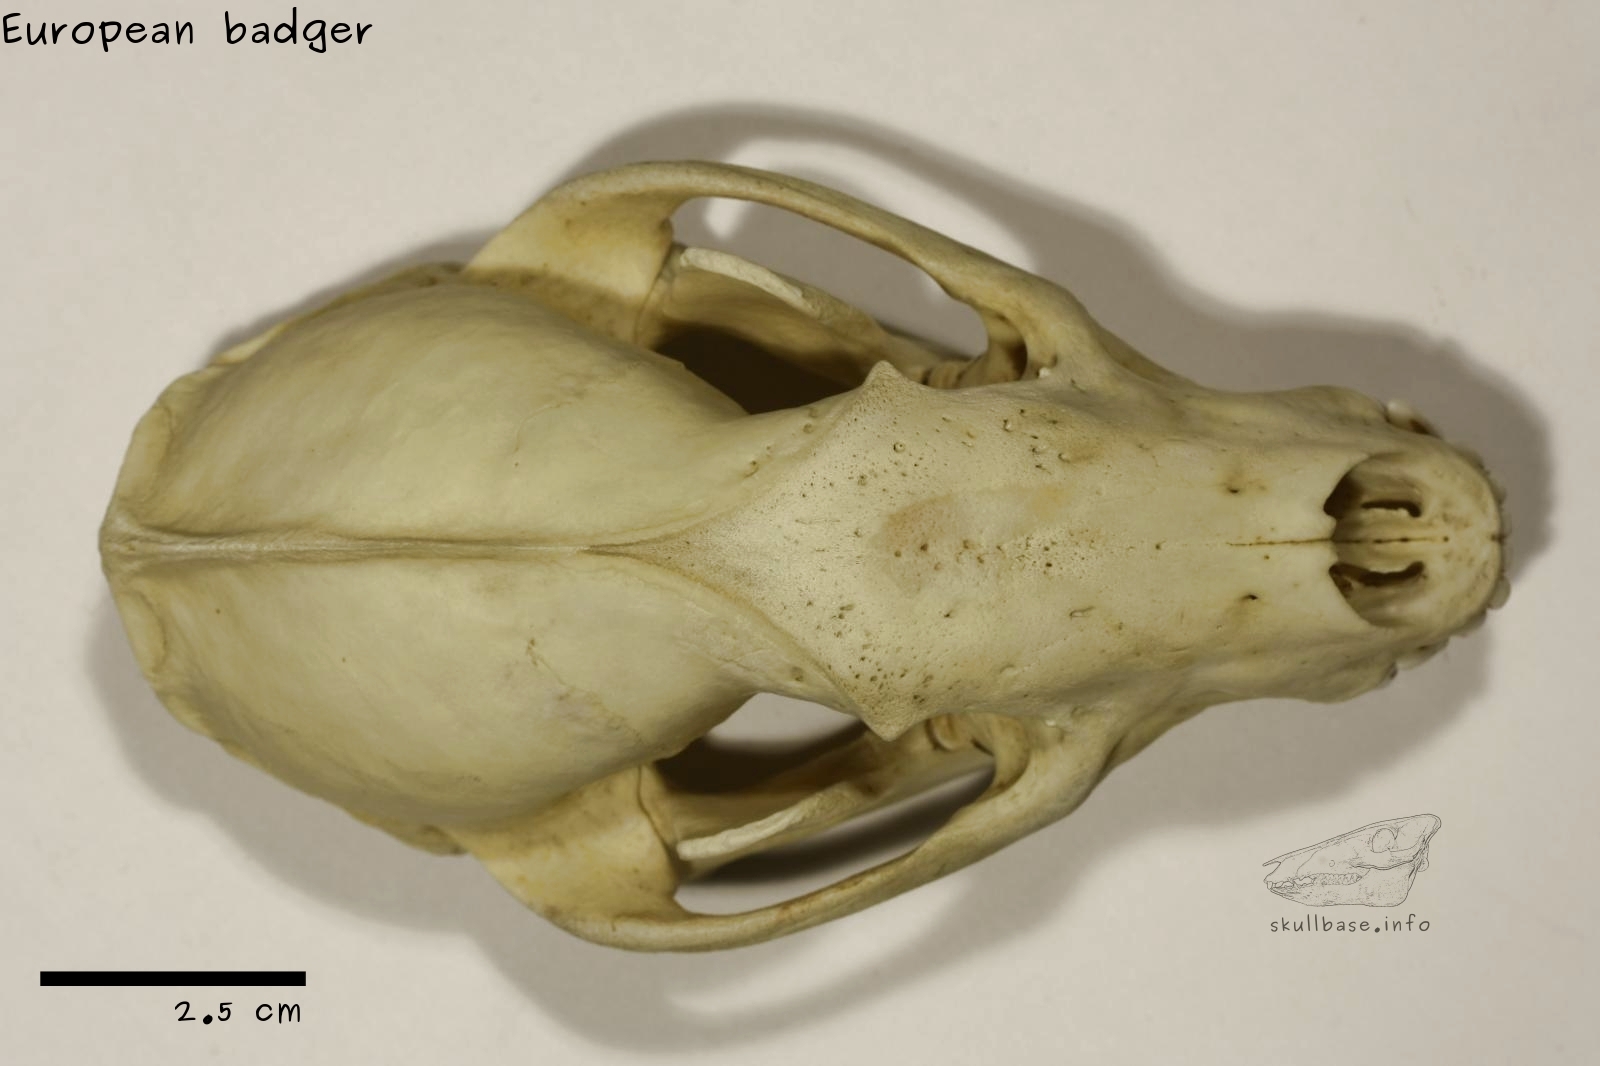 European badger (Meles meles) dorsal view